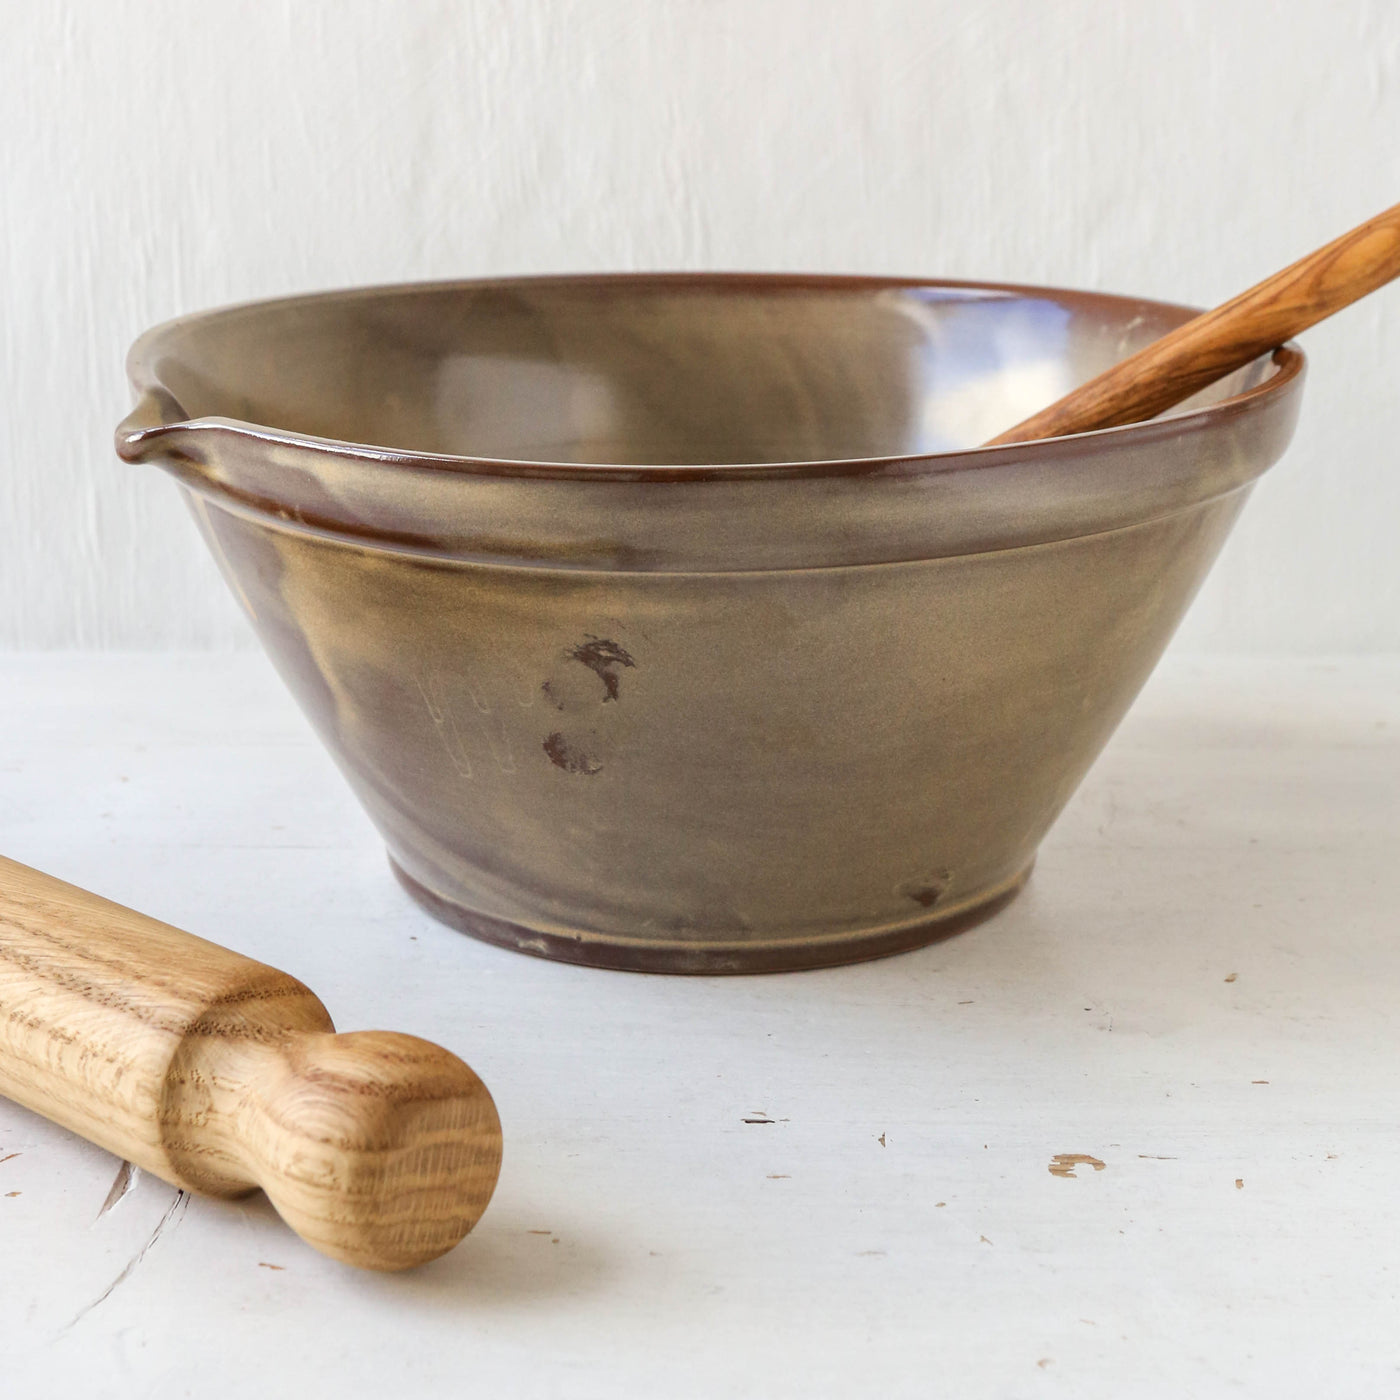 Lani Rustic Brown Stoneware Baking Bowl